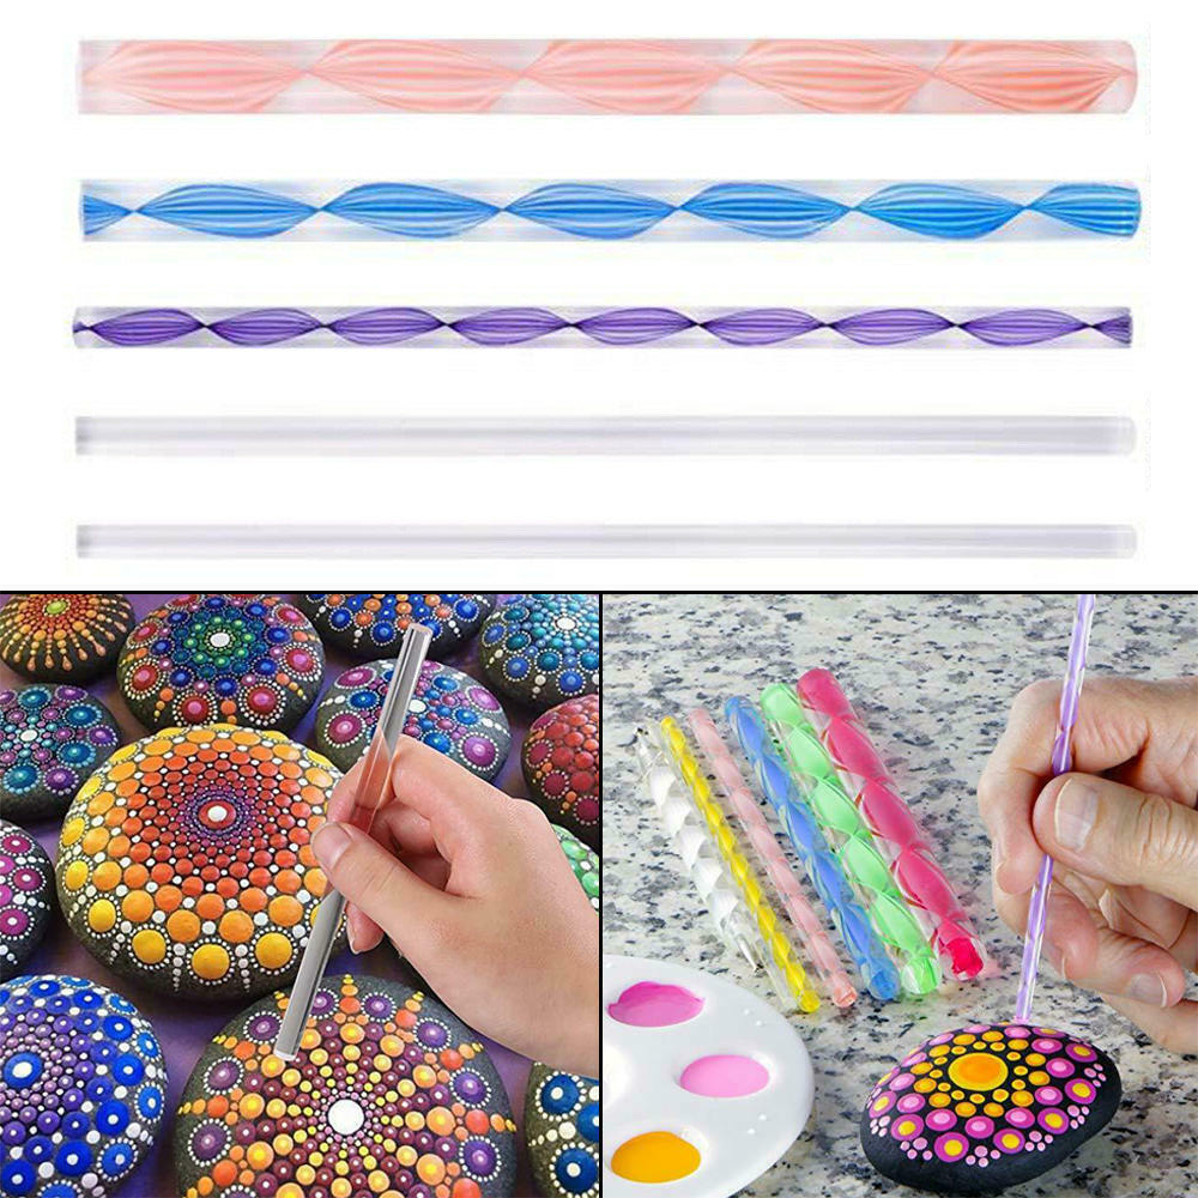 40Pcs/set DIY Mandala Dotting Tools Set For Painting Rocks Dot Kit Rock Stone Painting Pen Polka Dot Art Tool Template Cosmetic